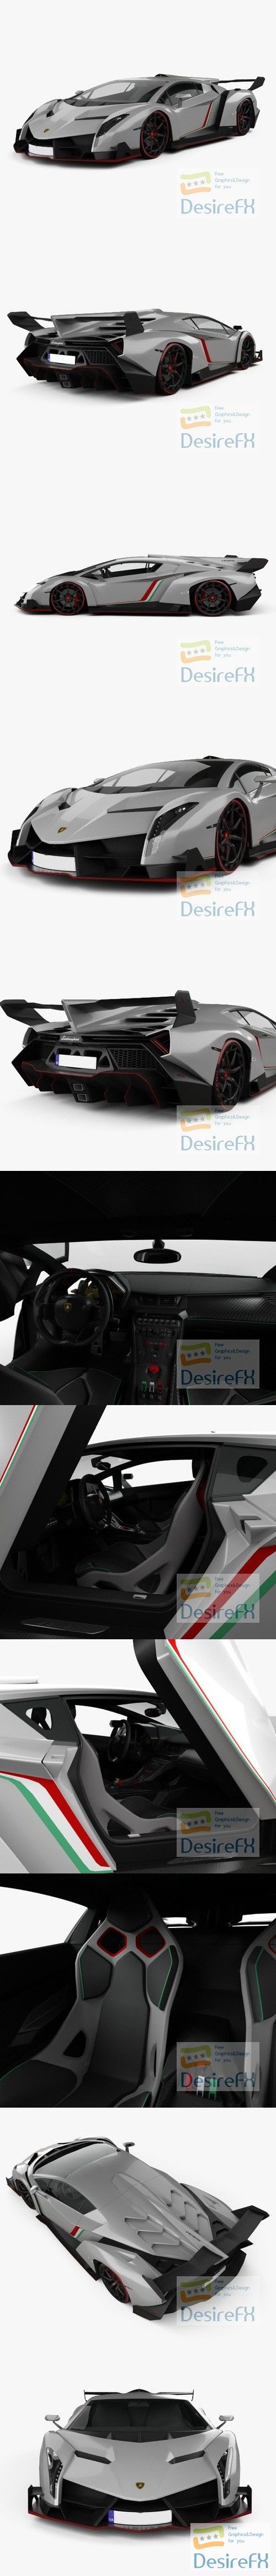 Lamborghini Veneno 2013 with HQ interior 3D Model